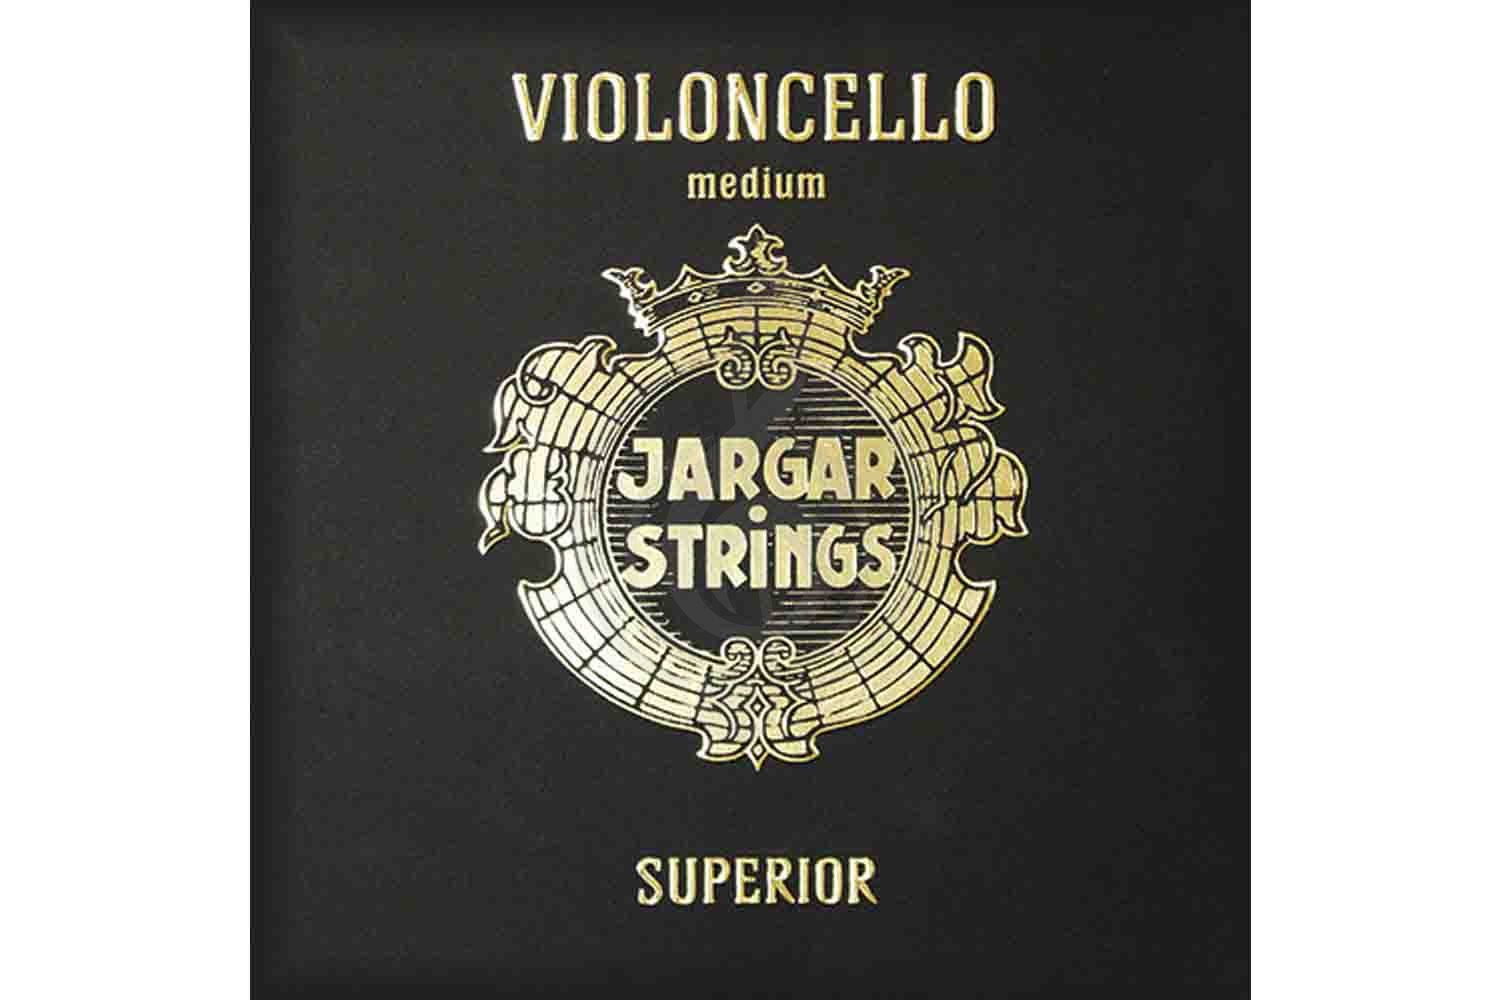 Струны для виолончели Jargar Strings Cello-C-Superior - Отдельная струна С/До для виолончели 4/4,среднее натяжение, Jargar Strings Cello-C-Superior в магазине DominantaMusic - фото 1